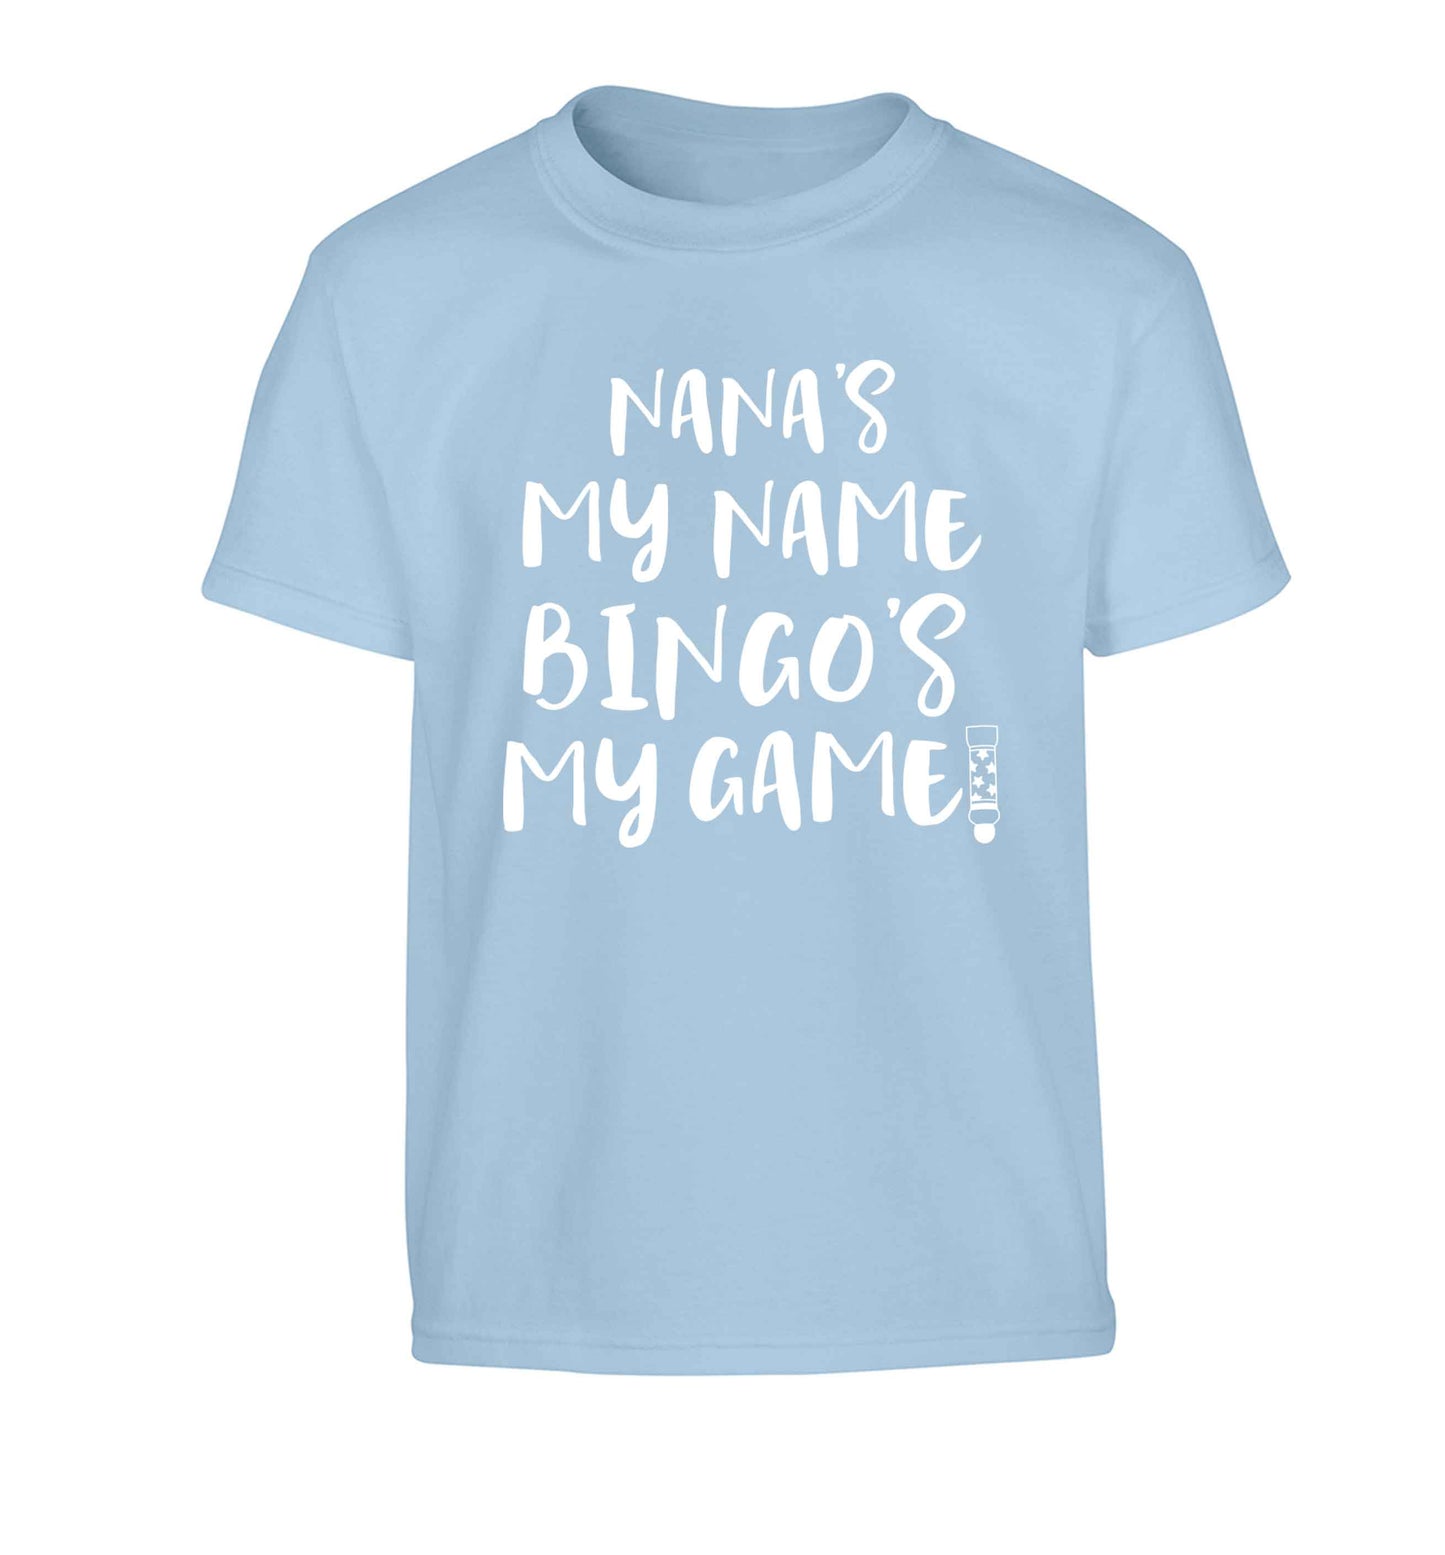 Nana's my name bingo's my game! Children's light blue Tshirt 12-13 Years